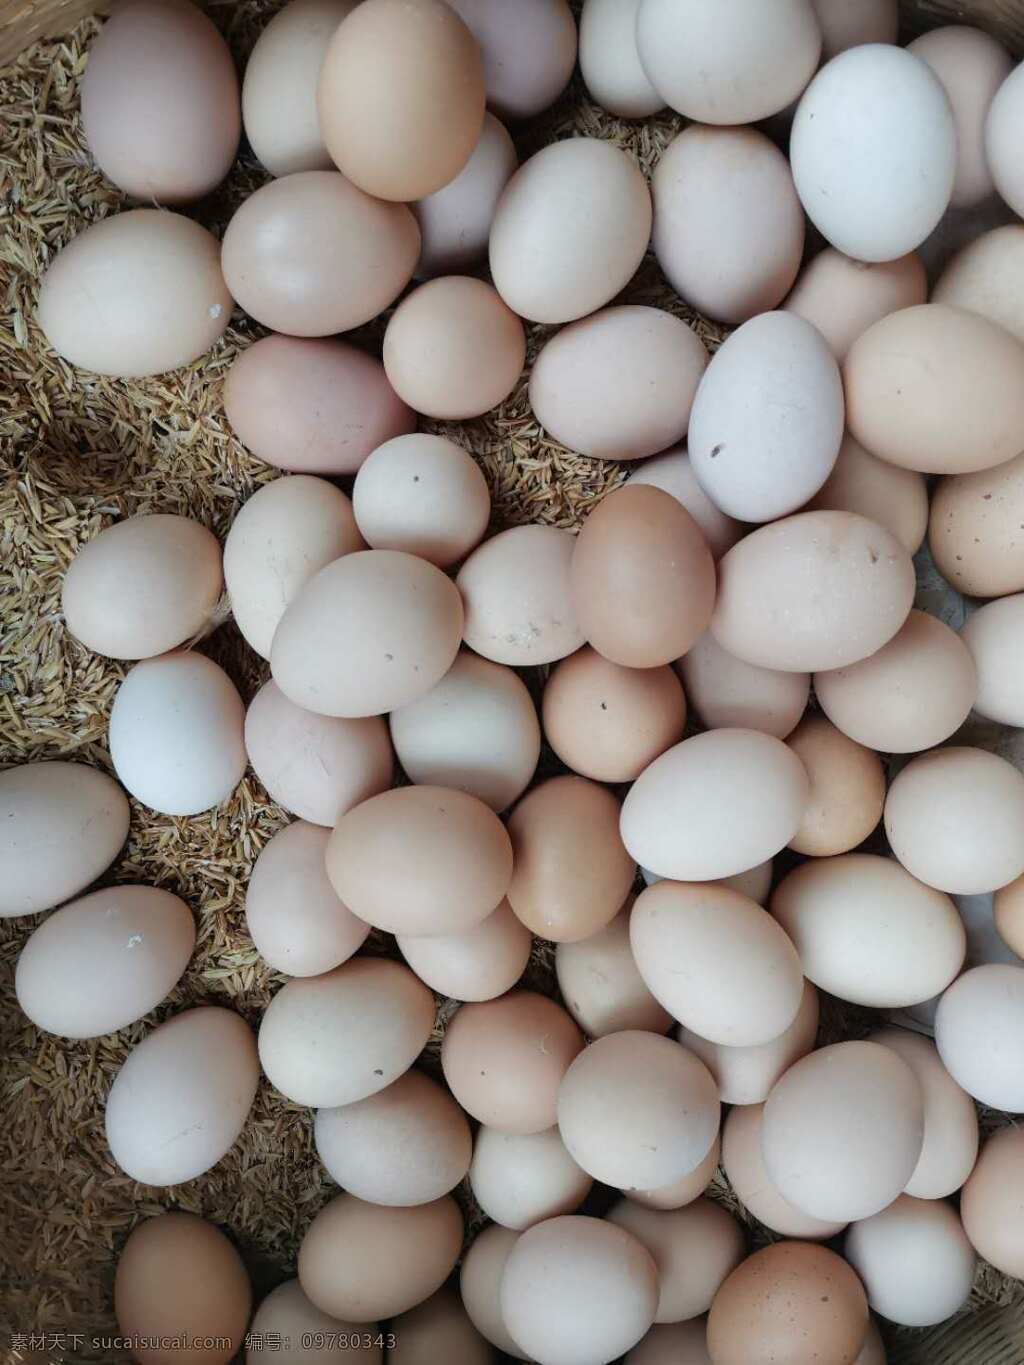 乡下土鸡蛋 乡下 土特产 鸡蛋 美味 吃食 生活素材 生活百科